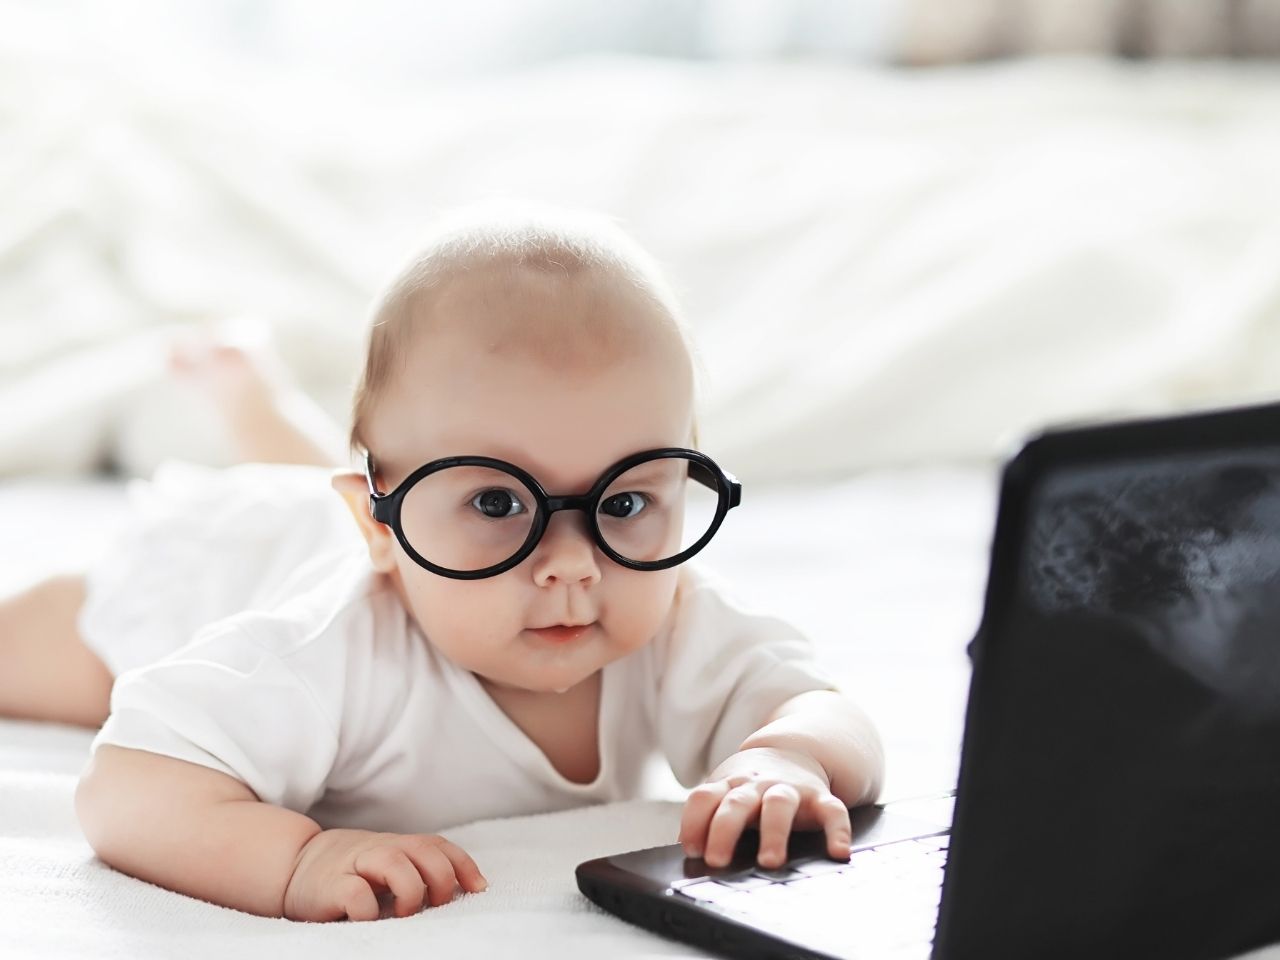 Baby wearing black framed glasses